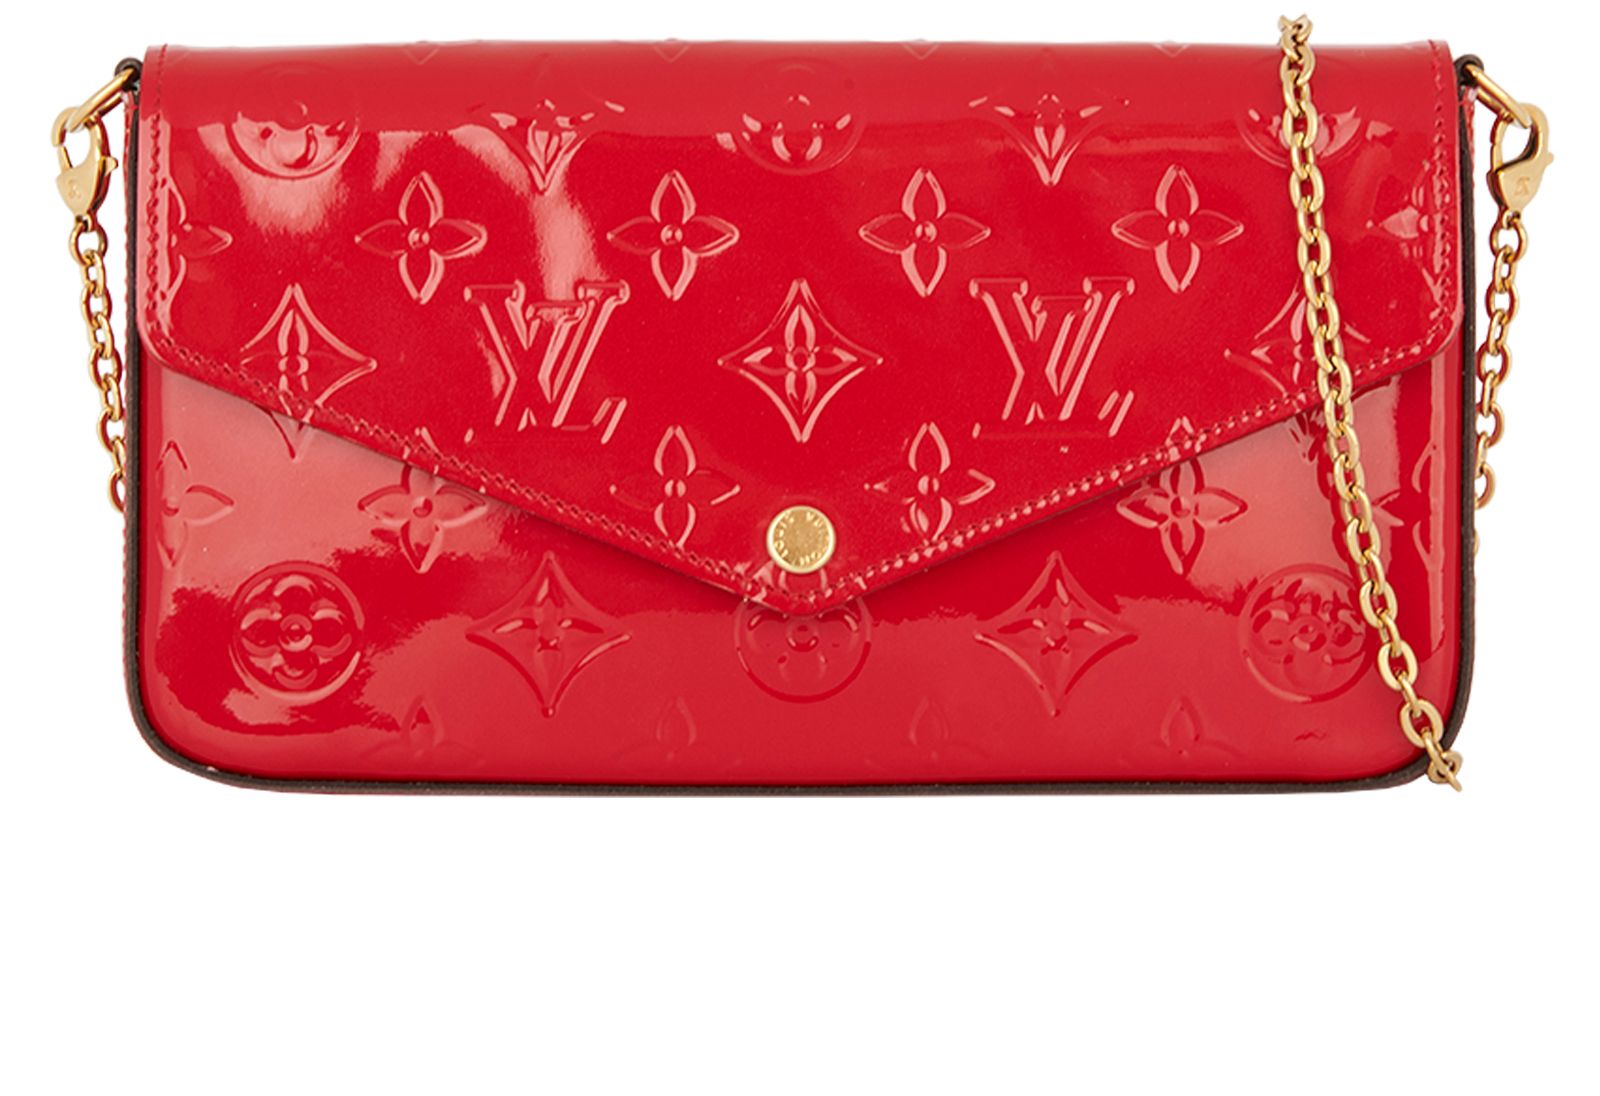 Louis Vuitton Pochette Félicie in Rose Ballerine Monogram Vernis - SOLD